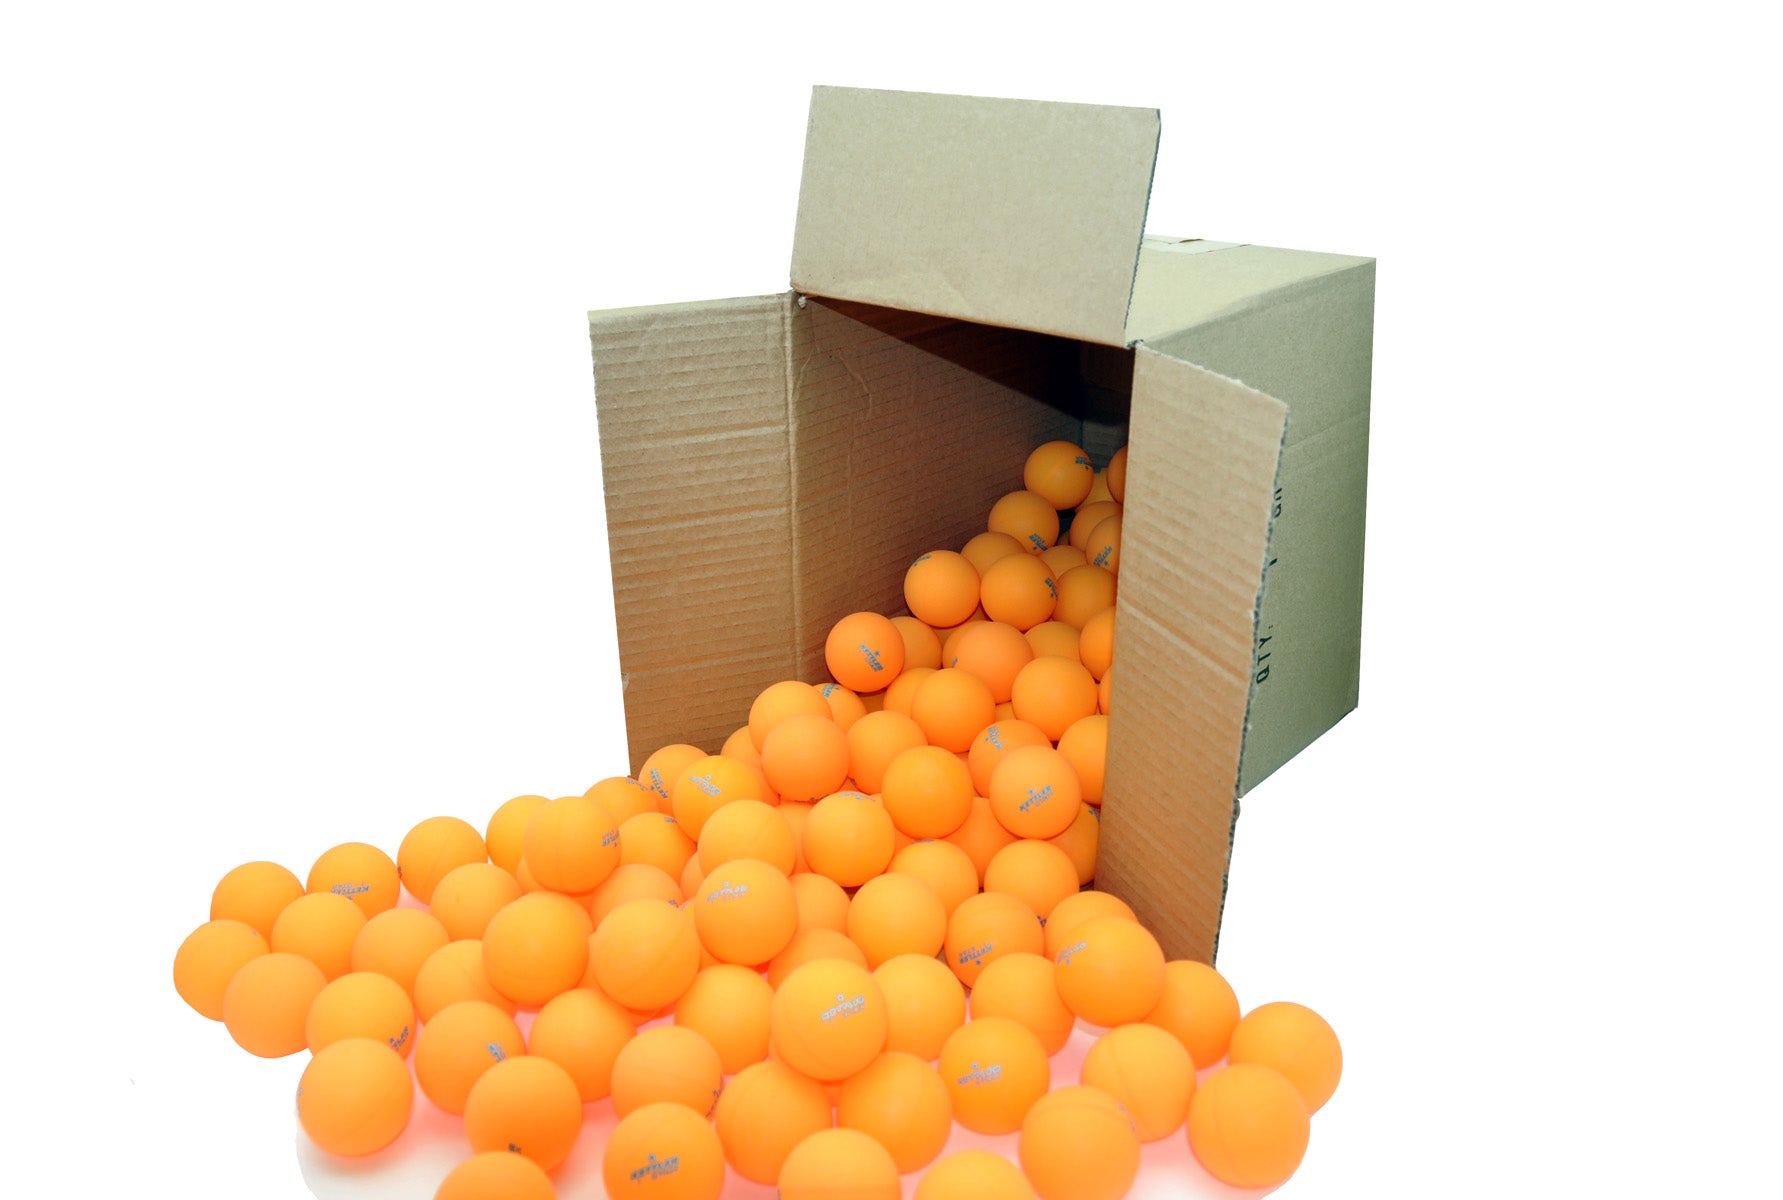 Kettler 1-Star TT Balls, 144-CT. Orange